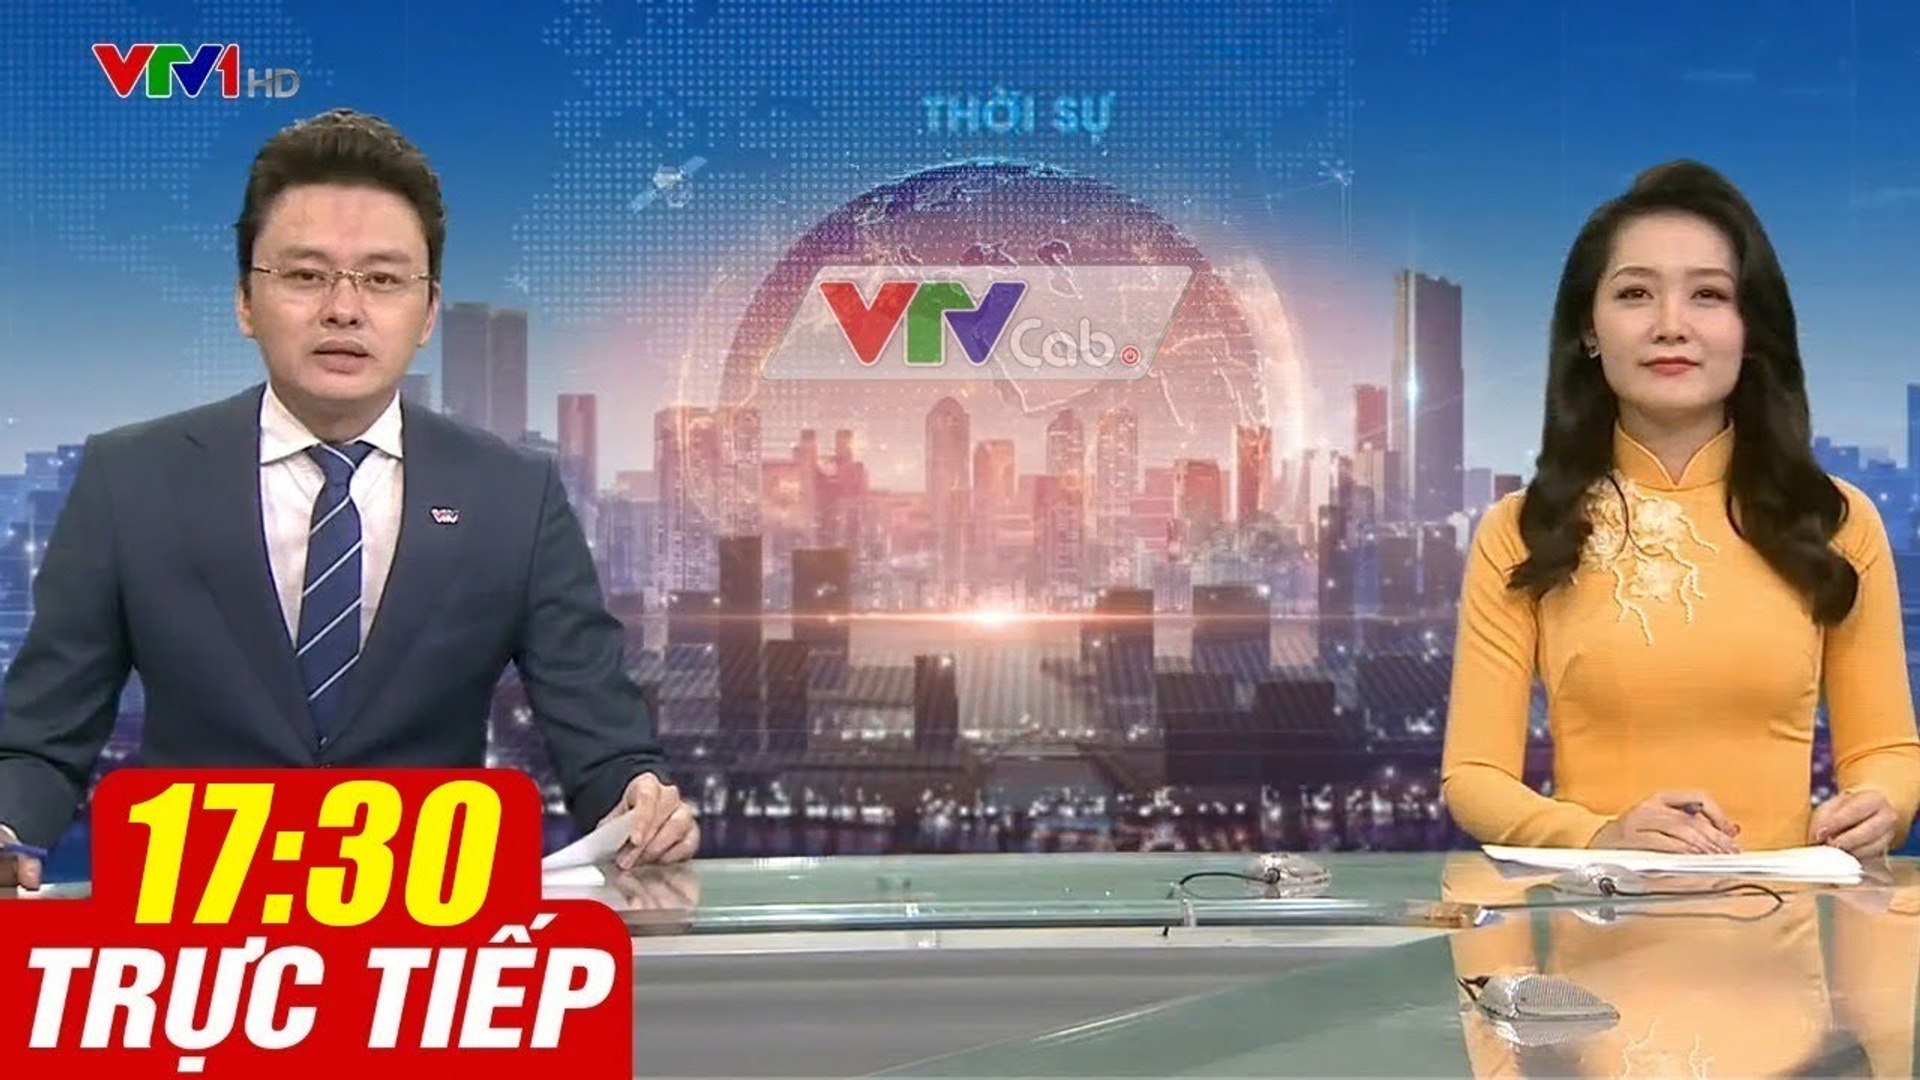 Trực Tiếp VIỆT NAM HÔM NAY 17h30 ngày 5.08.2020  Tin tức thời sự VTV1 mới nhất hôm nay